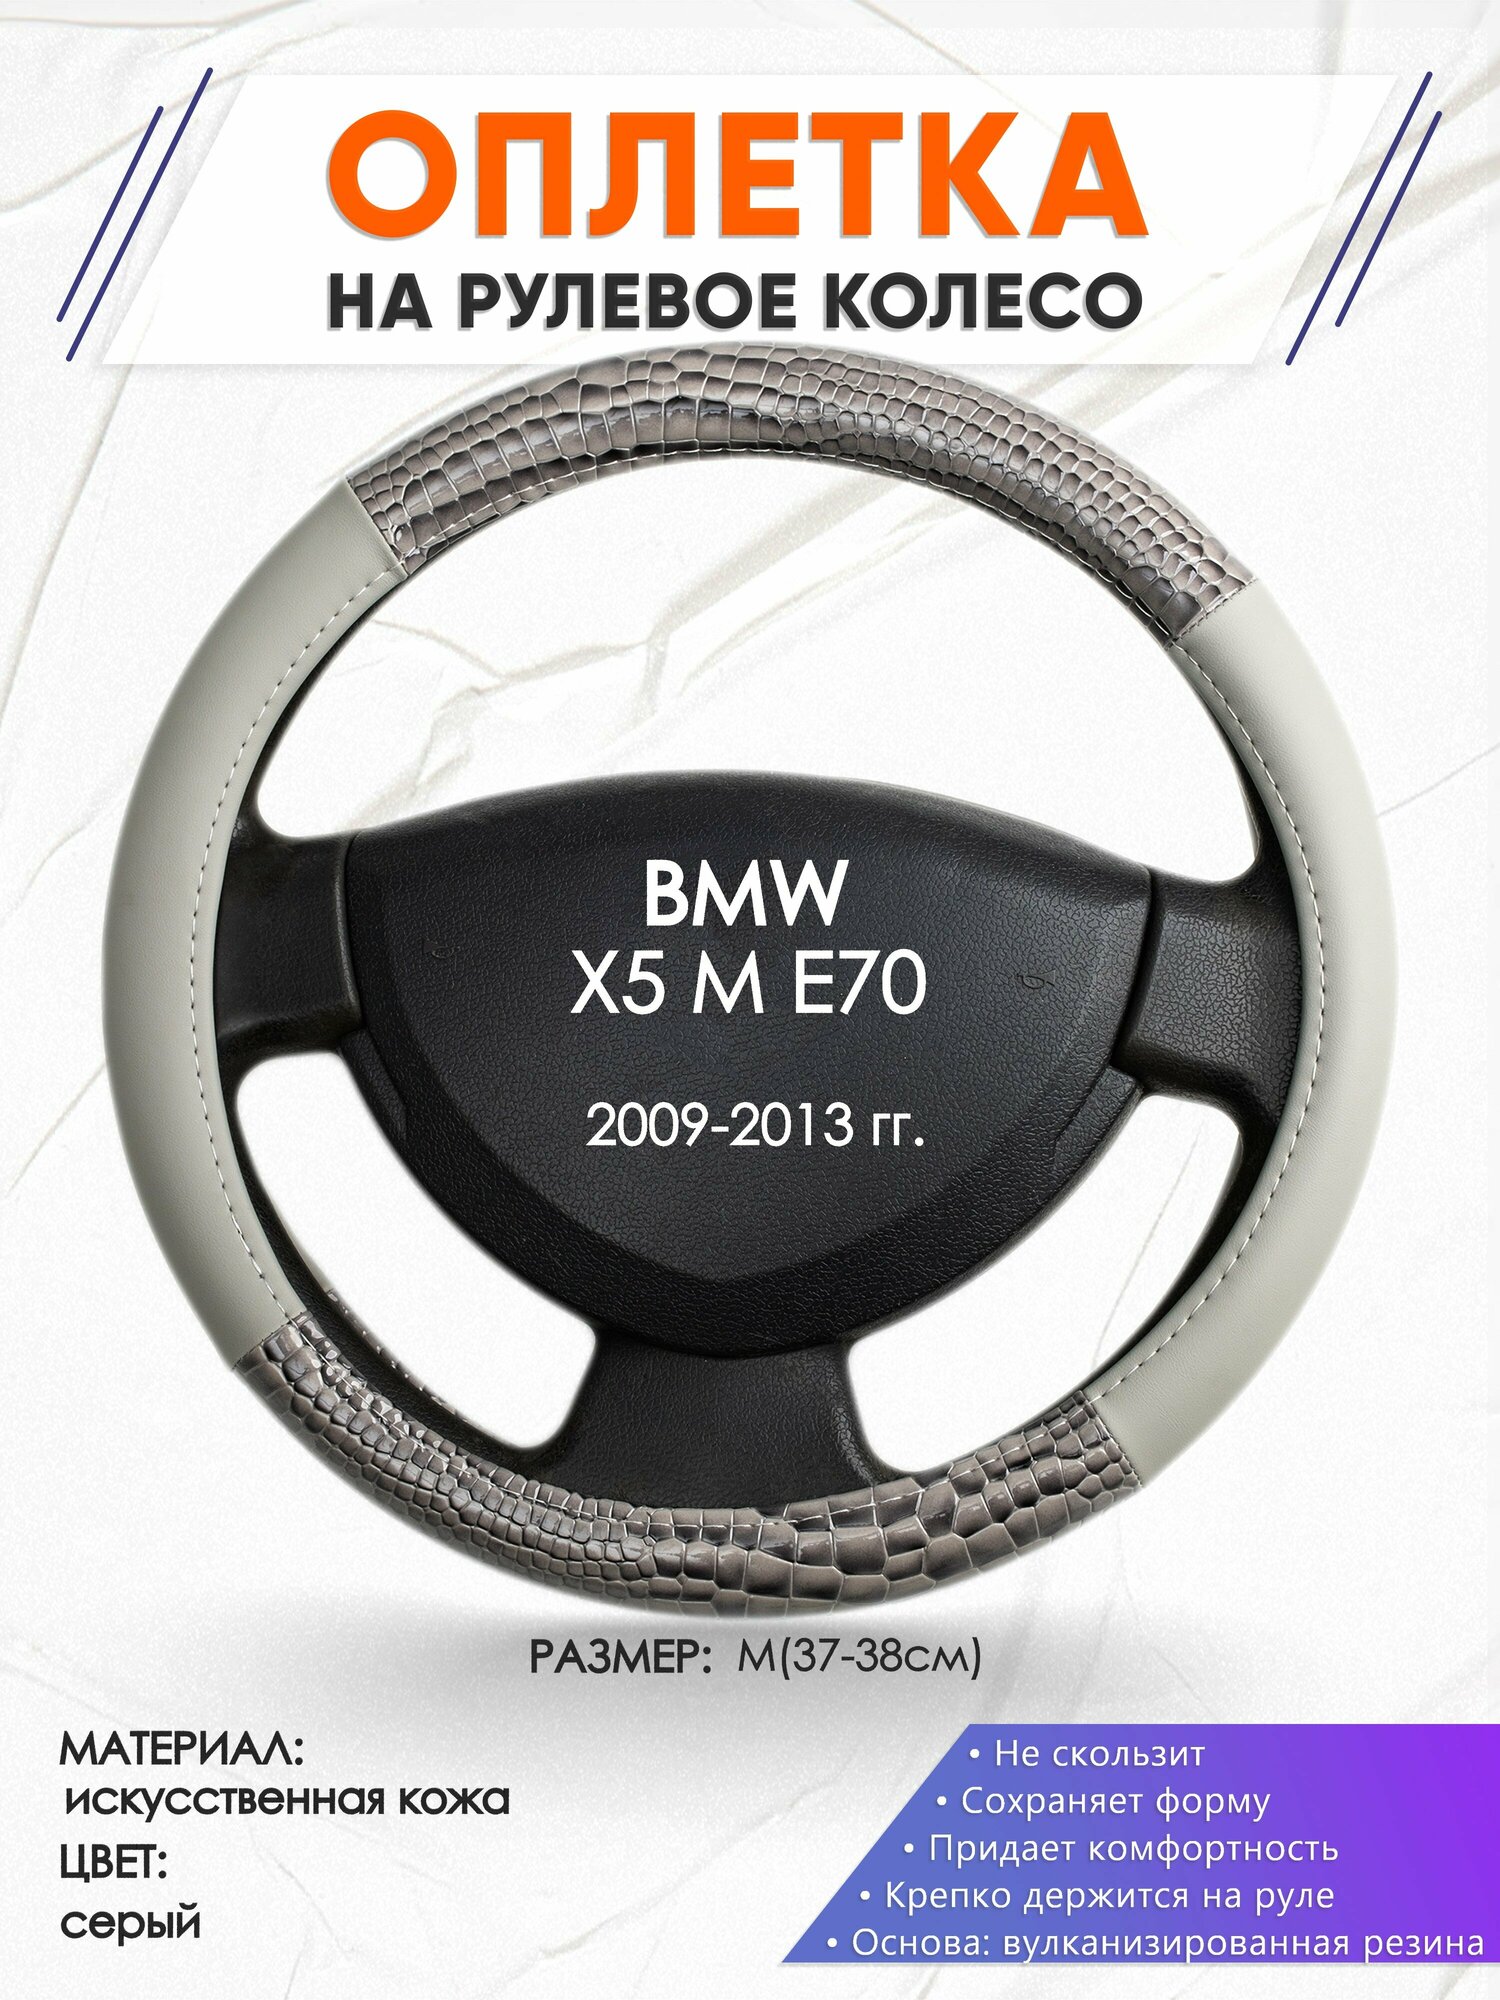 Оплетка наруль для BMW X5 M E70(Бмв икс5) 2009-2013 годов выпуска, размер M(37-38см), Искусственная кожа 84